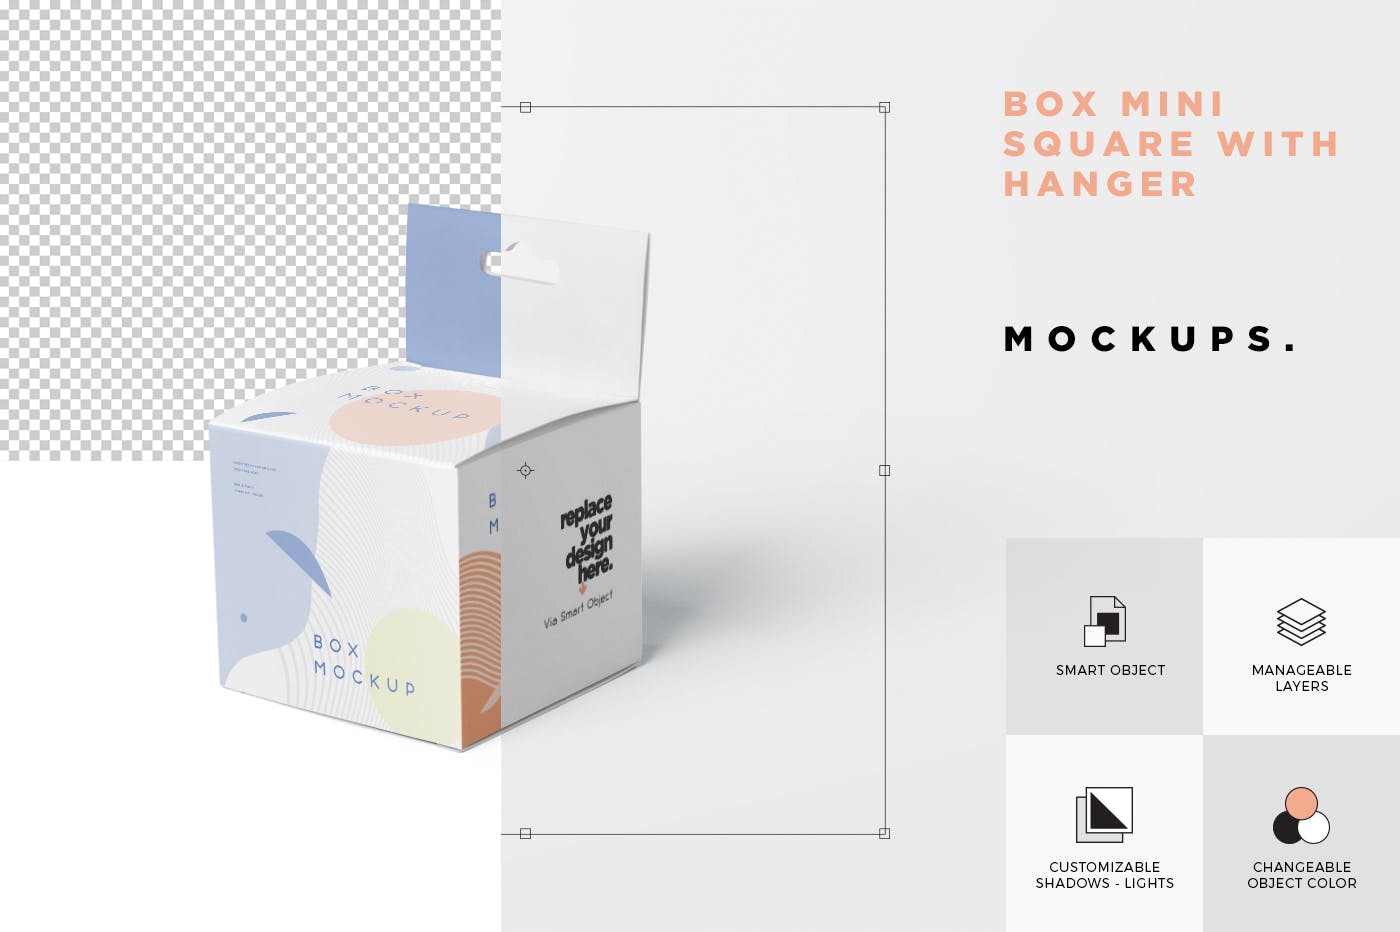 挂耳式迷你方形包装盒第一素材精选模板 Box Mockup Set – Mini Square with Hanger插图(6)